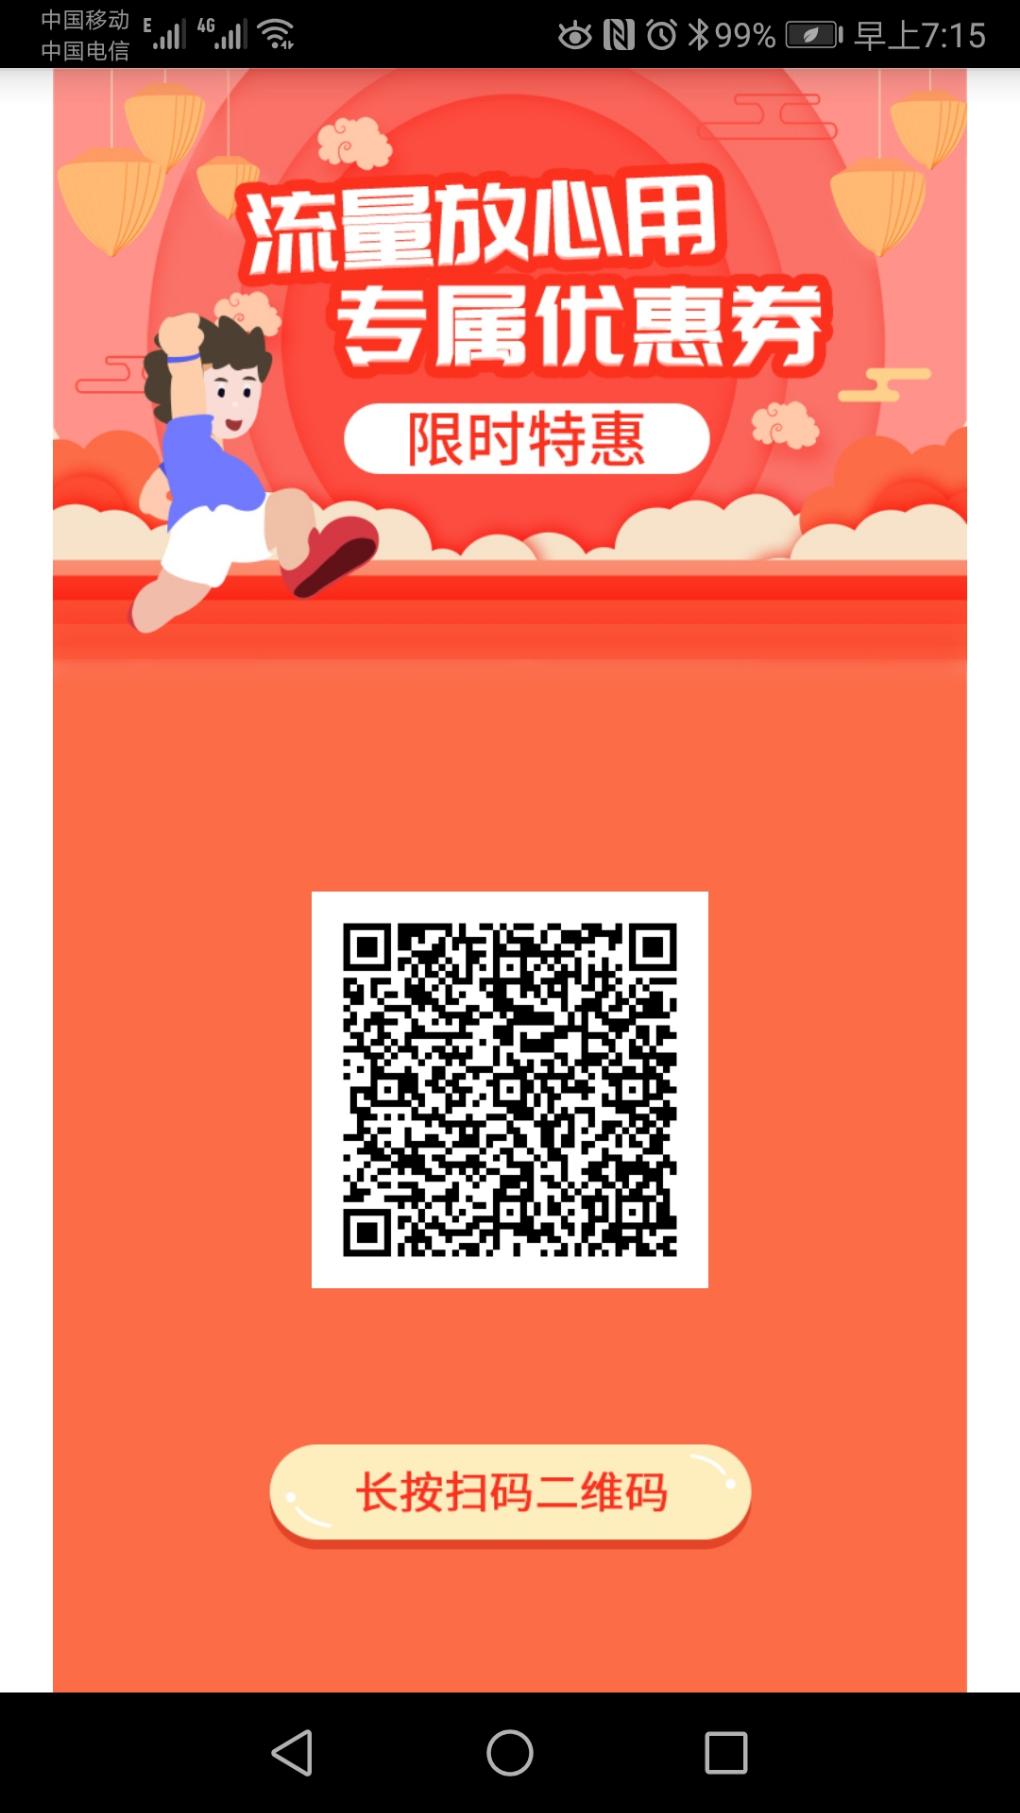 北京移动惠享流量包-20元20G-有效期27个月-部分号码可以办理-惠小助(52huixz.com)